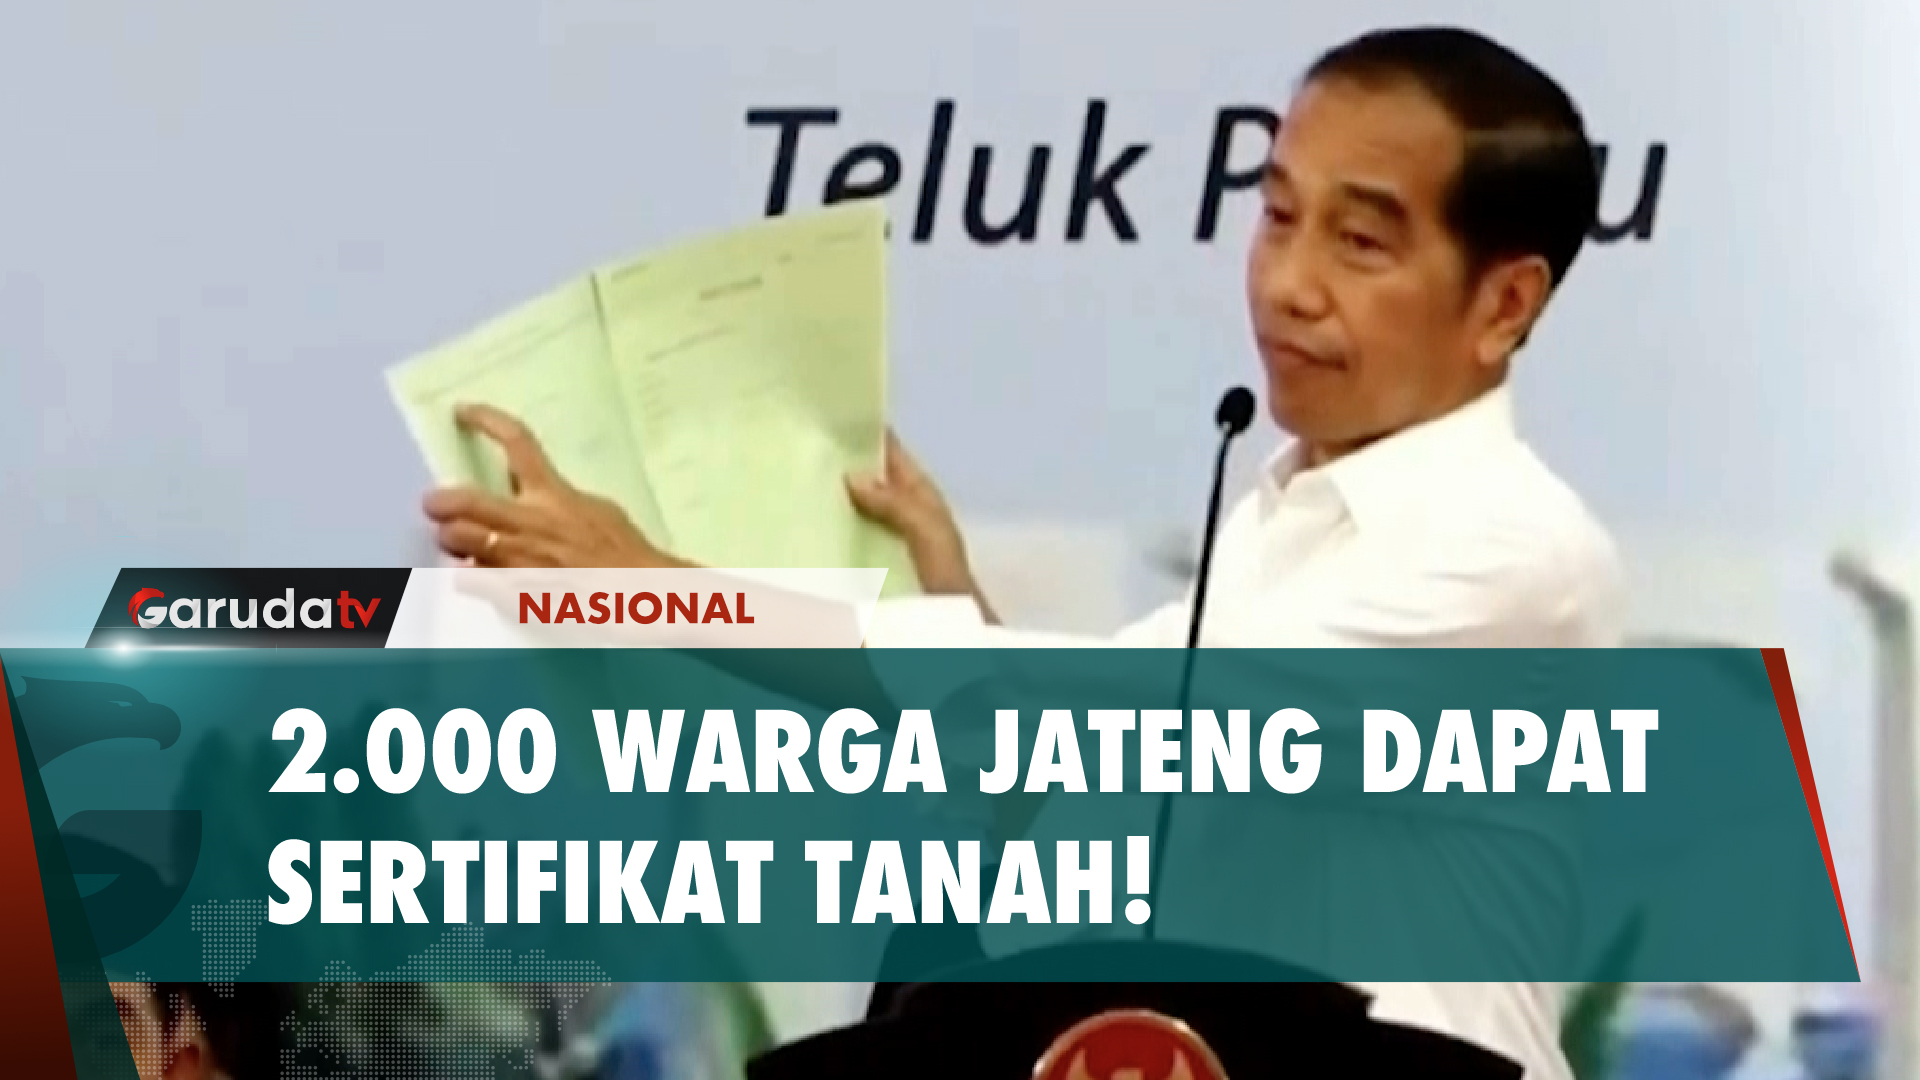 Presiden Jokowi Serahkan 2.000 Sertfikat Tanah ke Warga Jateng